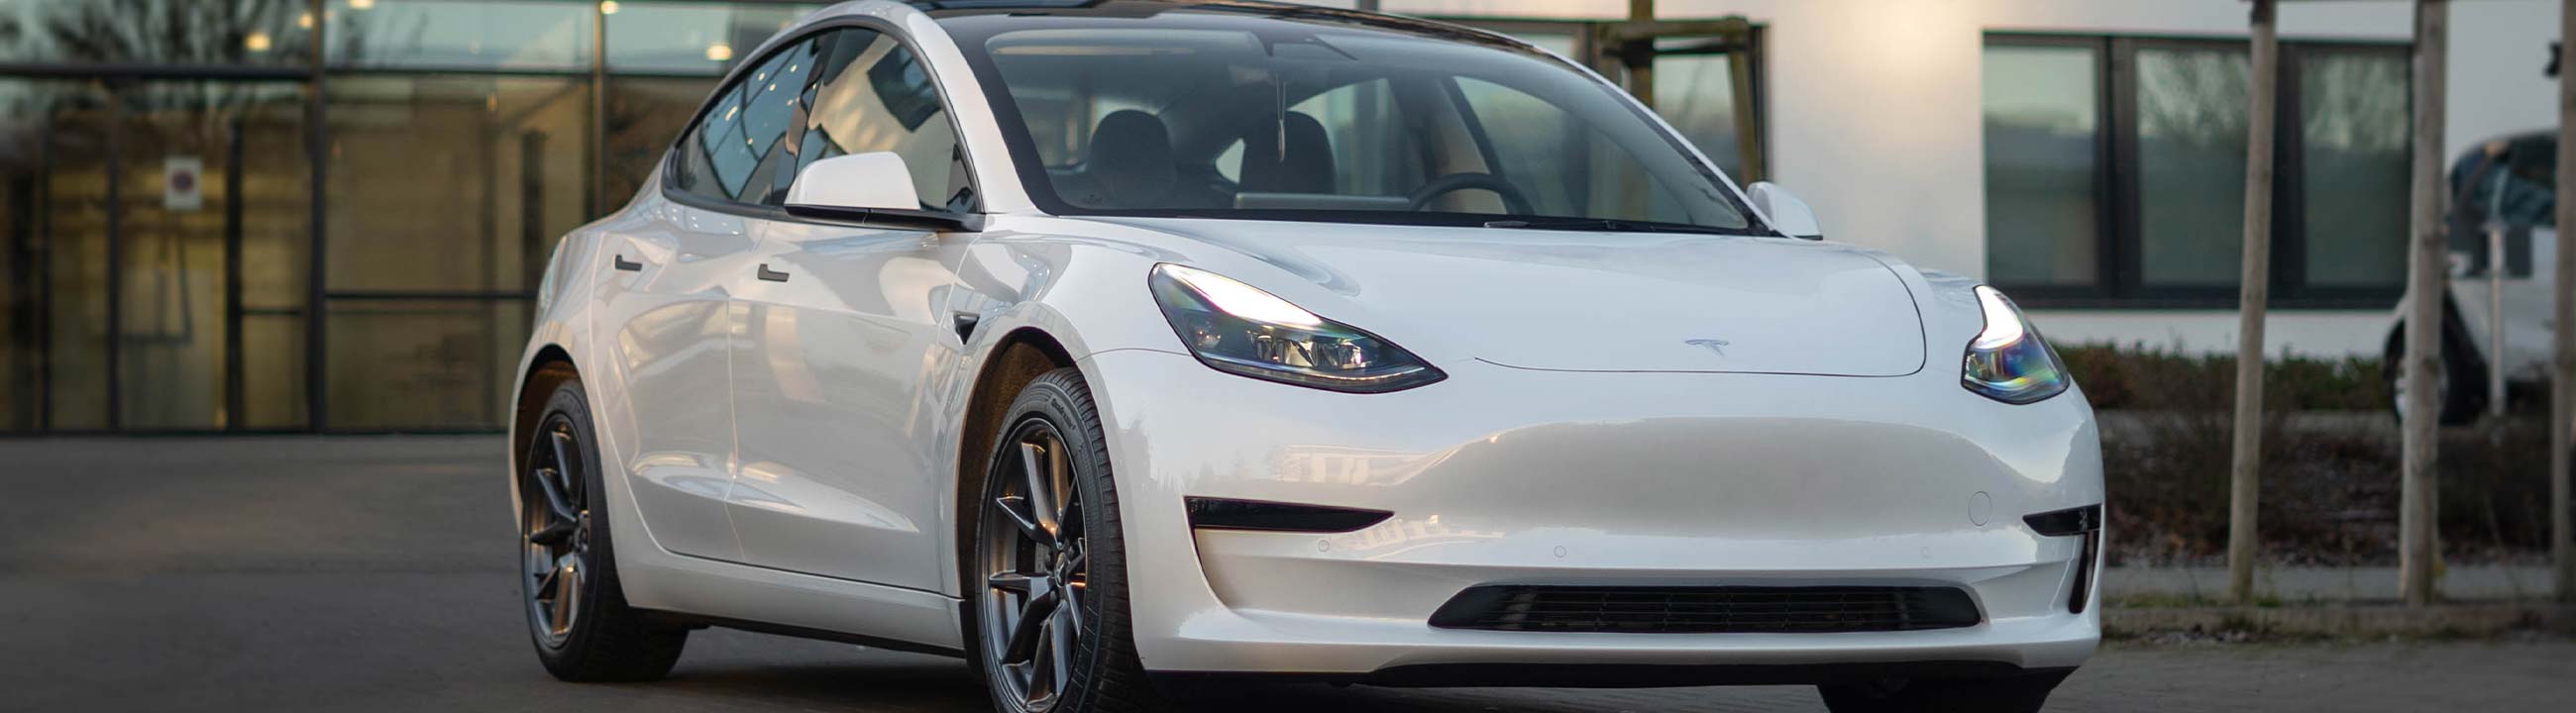 Neue auto aufkleber FÜR Tesla Modell 3 Modell Y körper aussehen